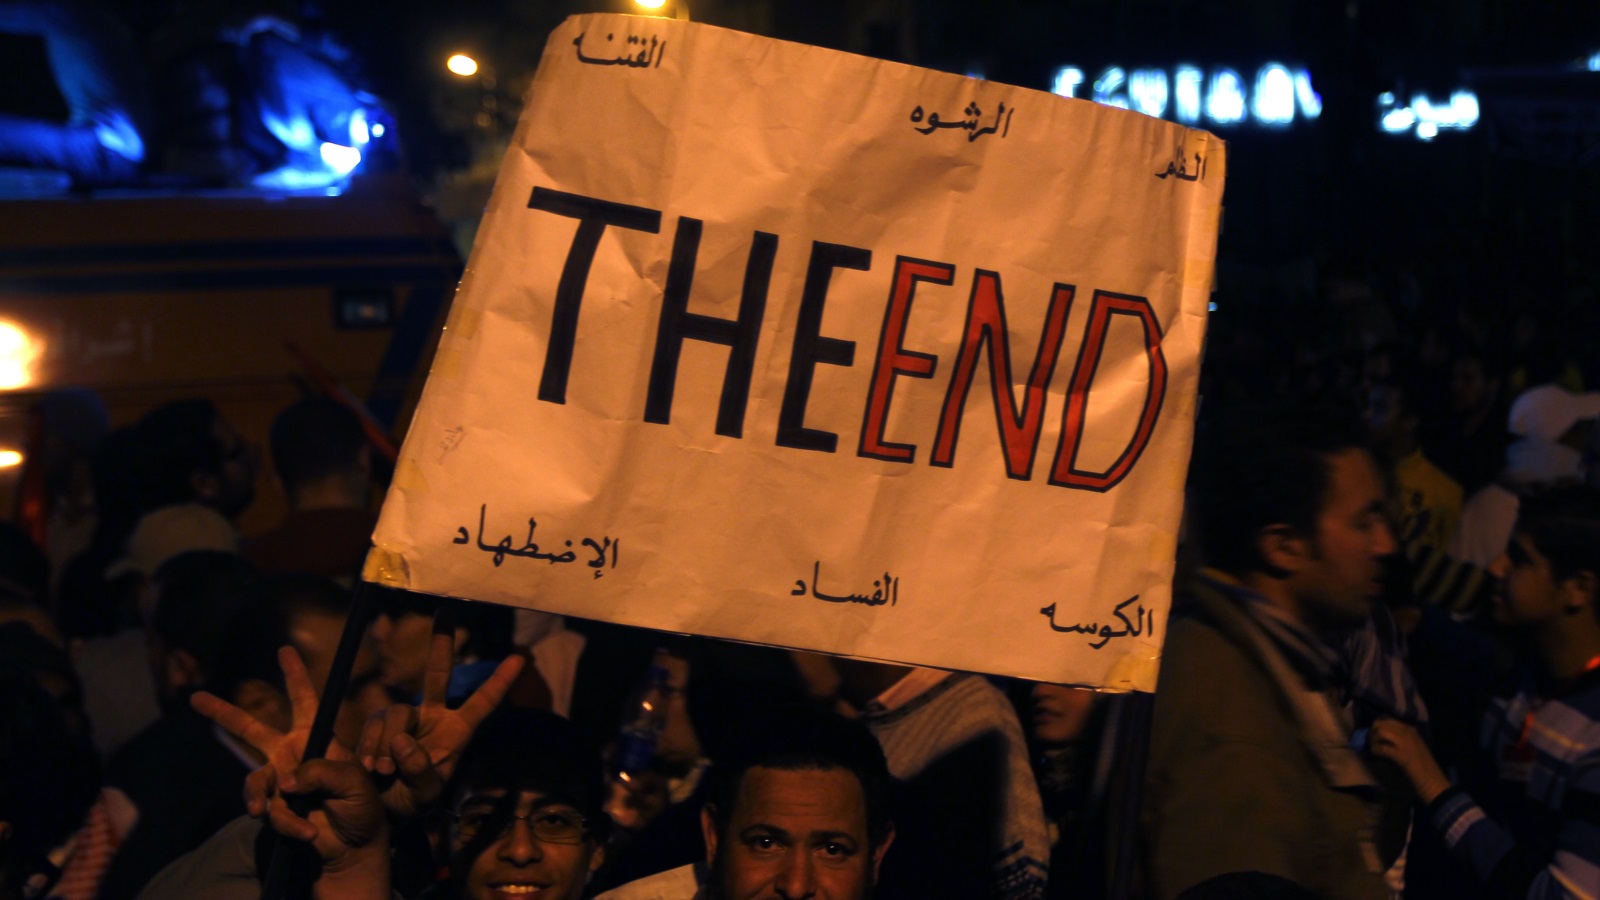 ازدادت قوة الحراك الاحتجاجي ضد مبارك ونظامه مع تأسيس حركة 6 إبريل عام 2008، أدرك النظام أخيرا خطر هذه الحركات الاحتجاجية وأراد غلق المجال العام وتأميمه مرة أخرى، وهو ما لم يفلح فيه.